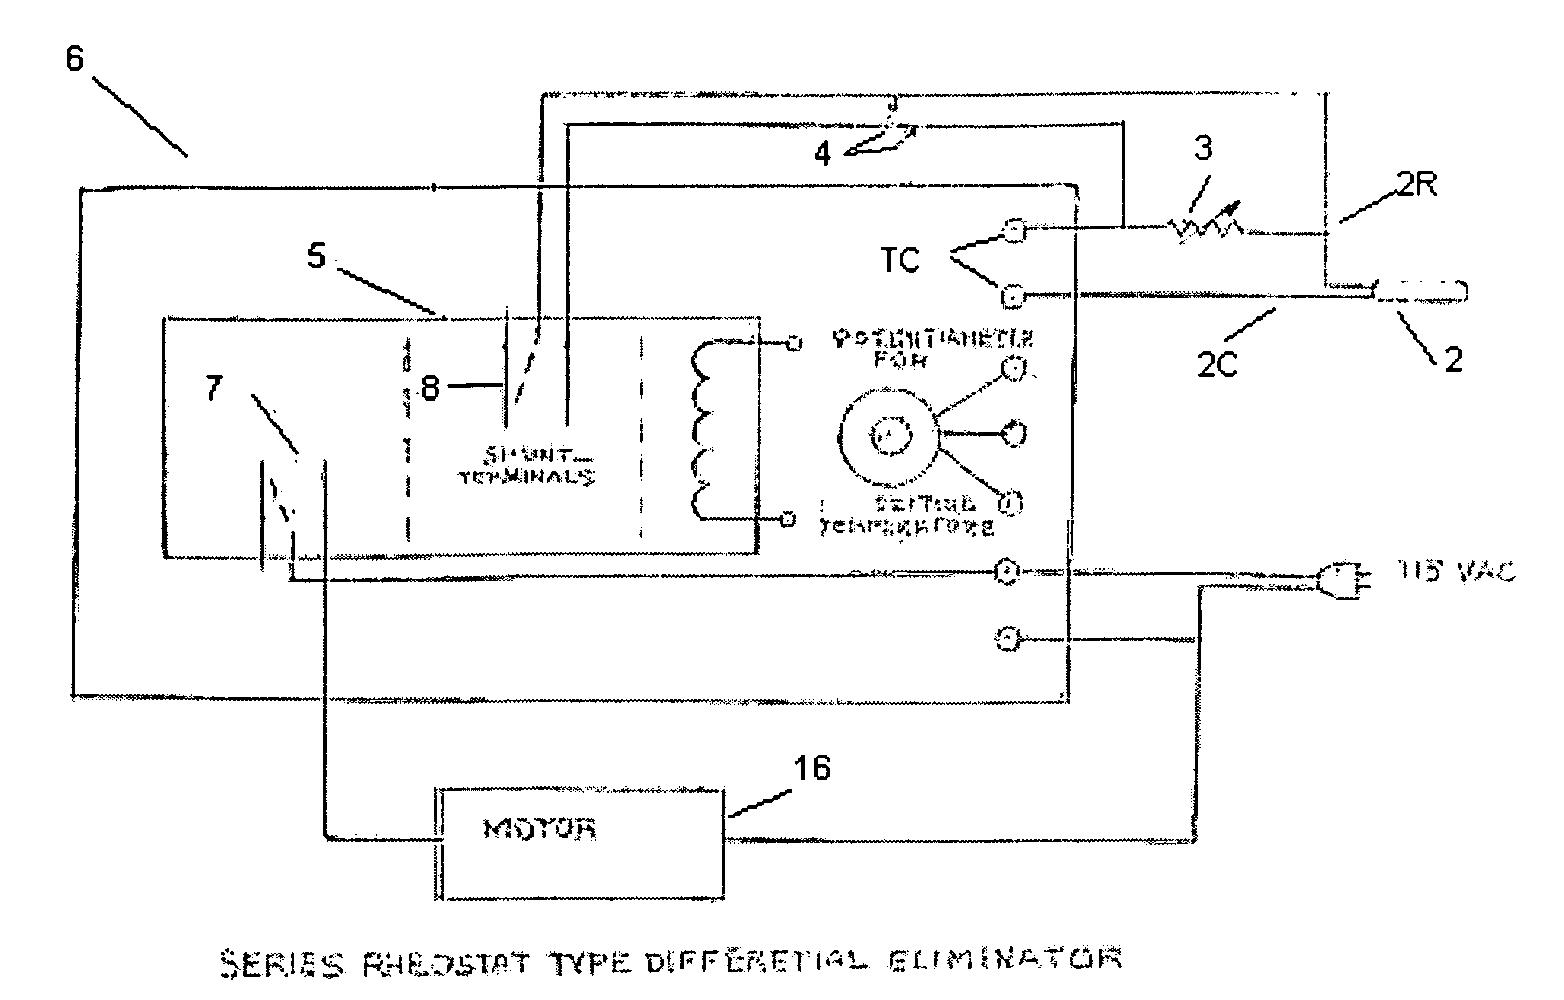 Temperature differential eliminator